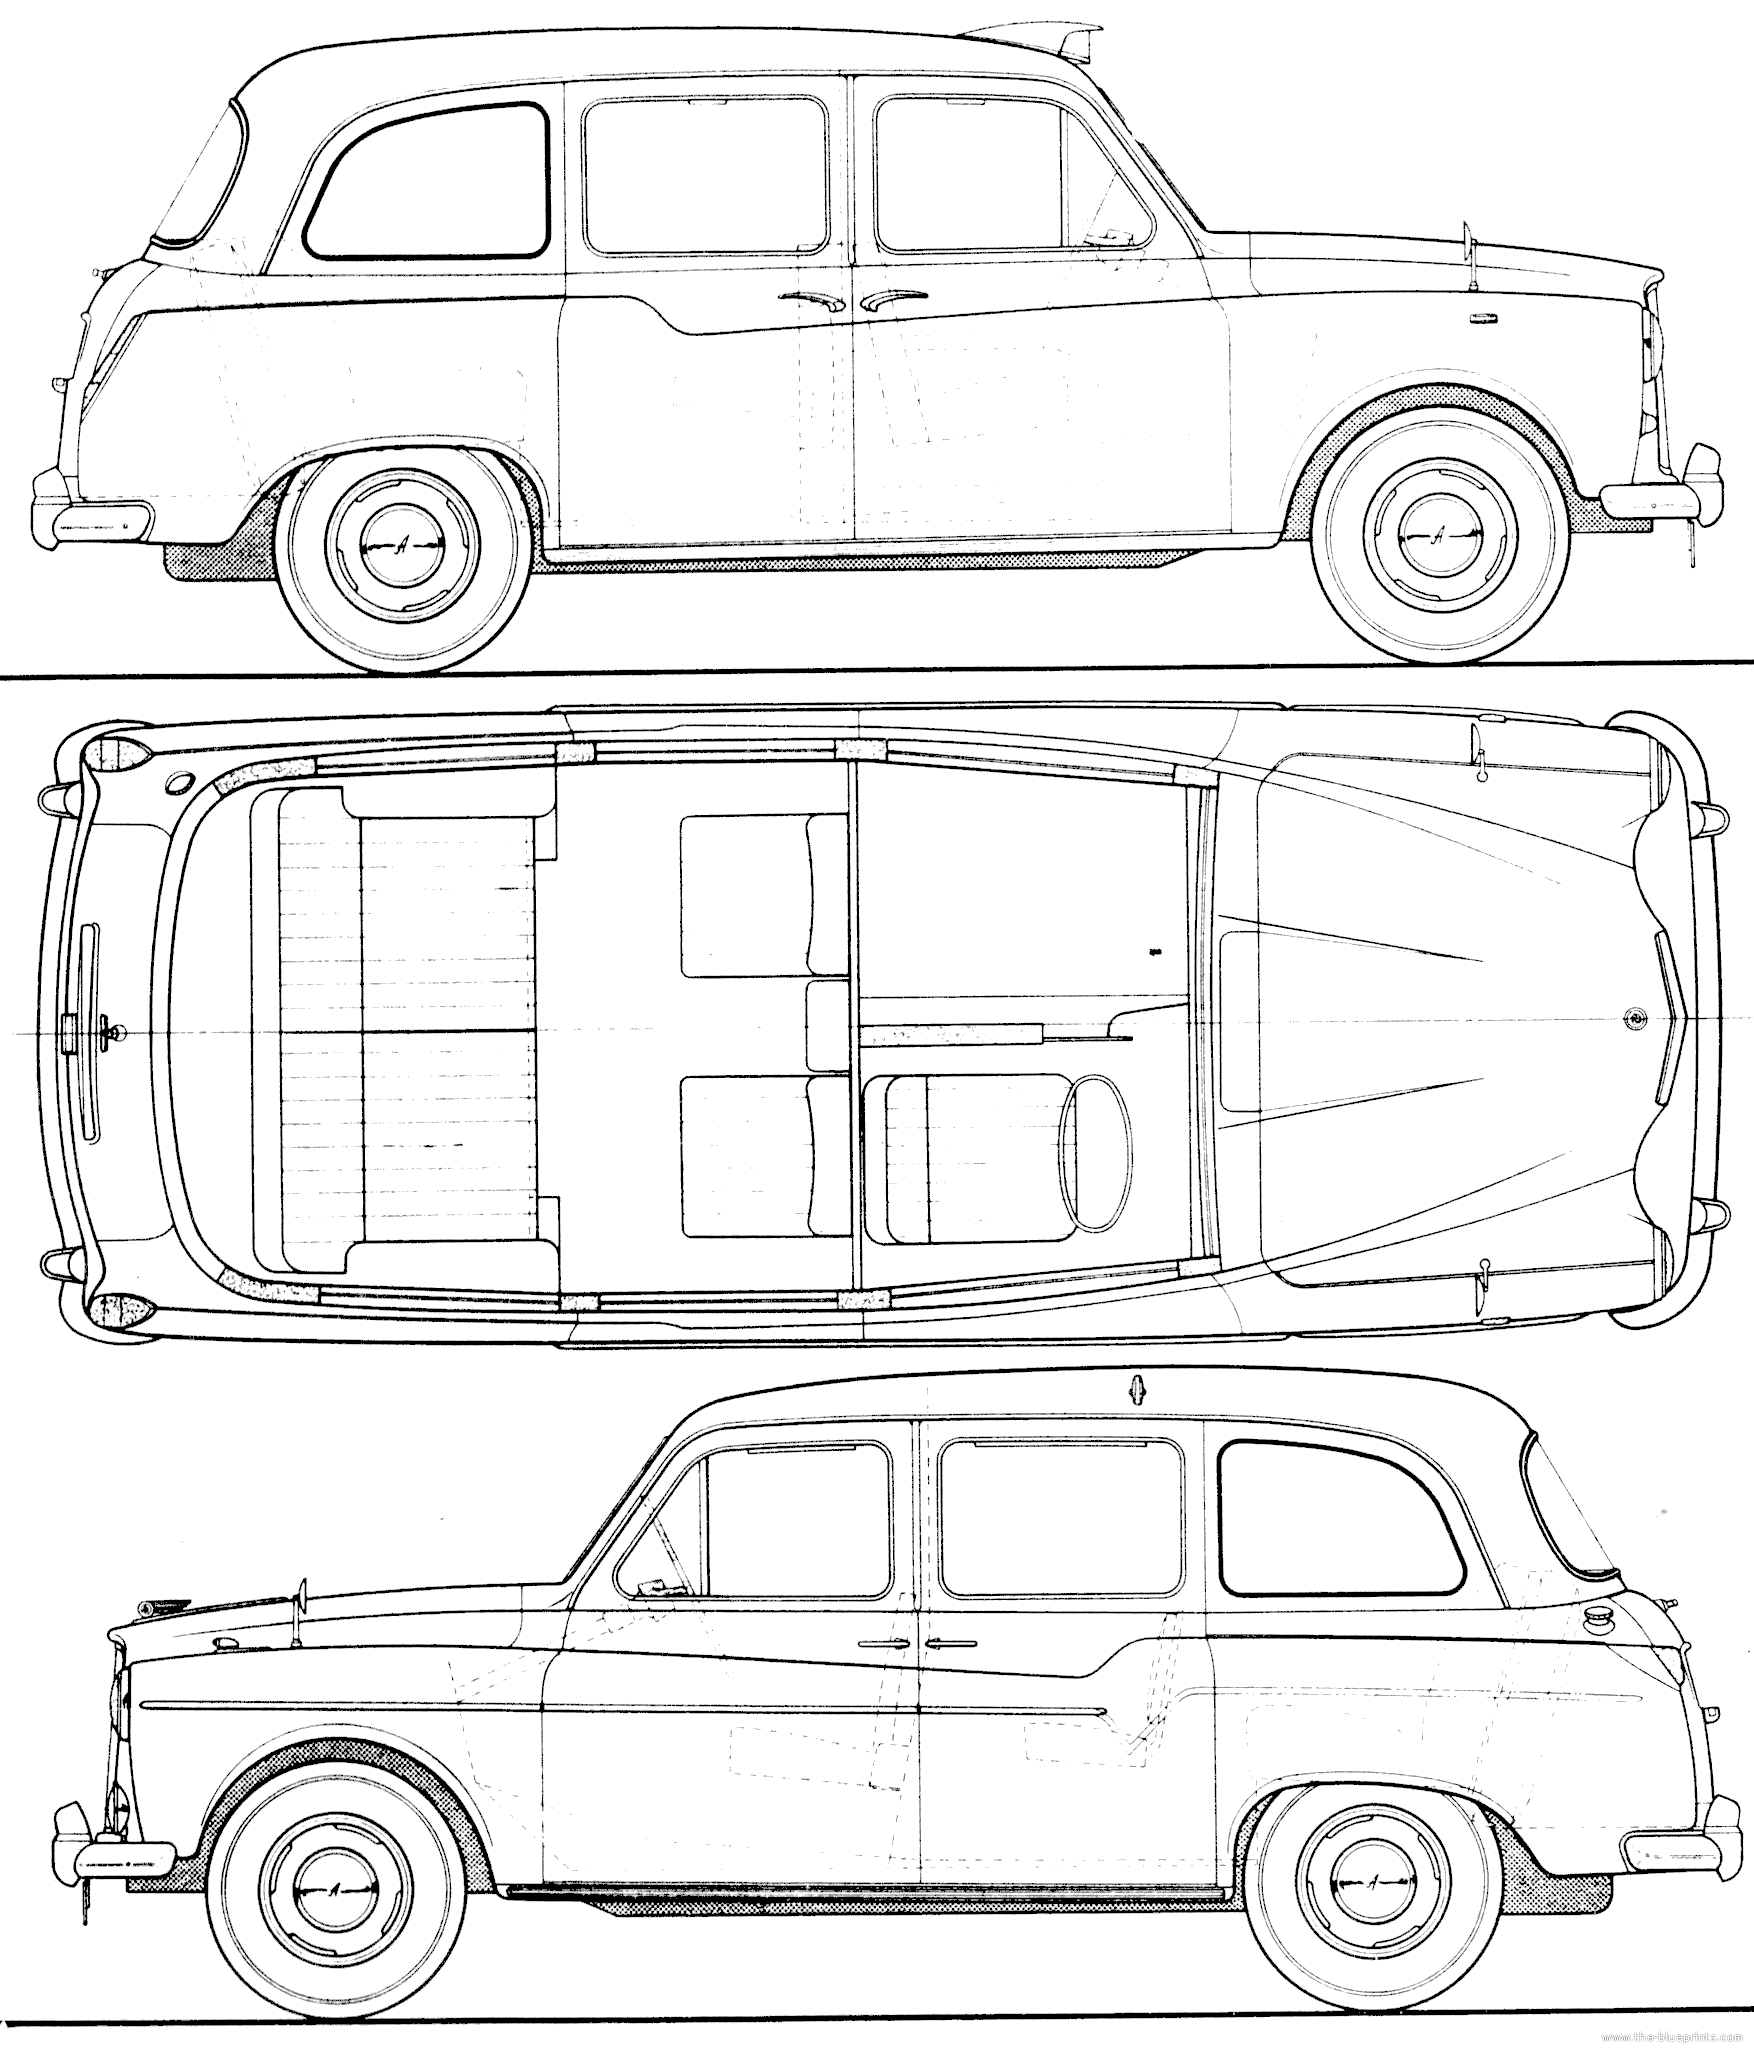 The-Blueprints.com - Blueprints > Cars > Austin > Austin FX4 Taxi 190